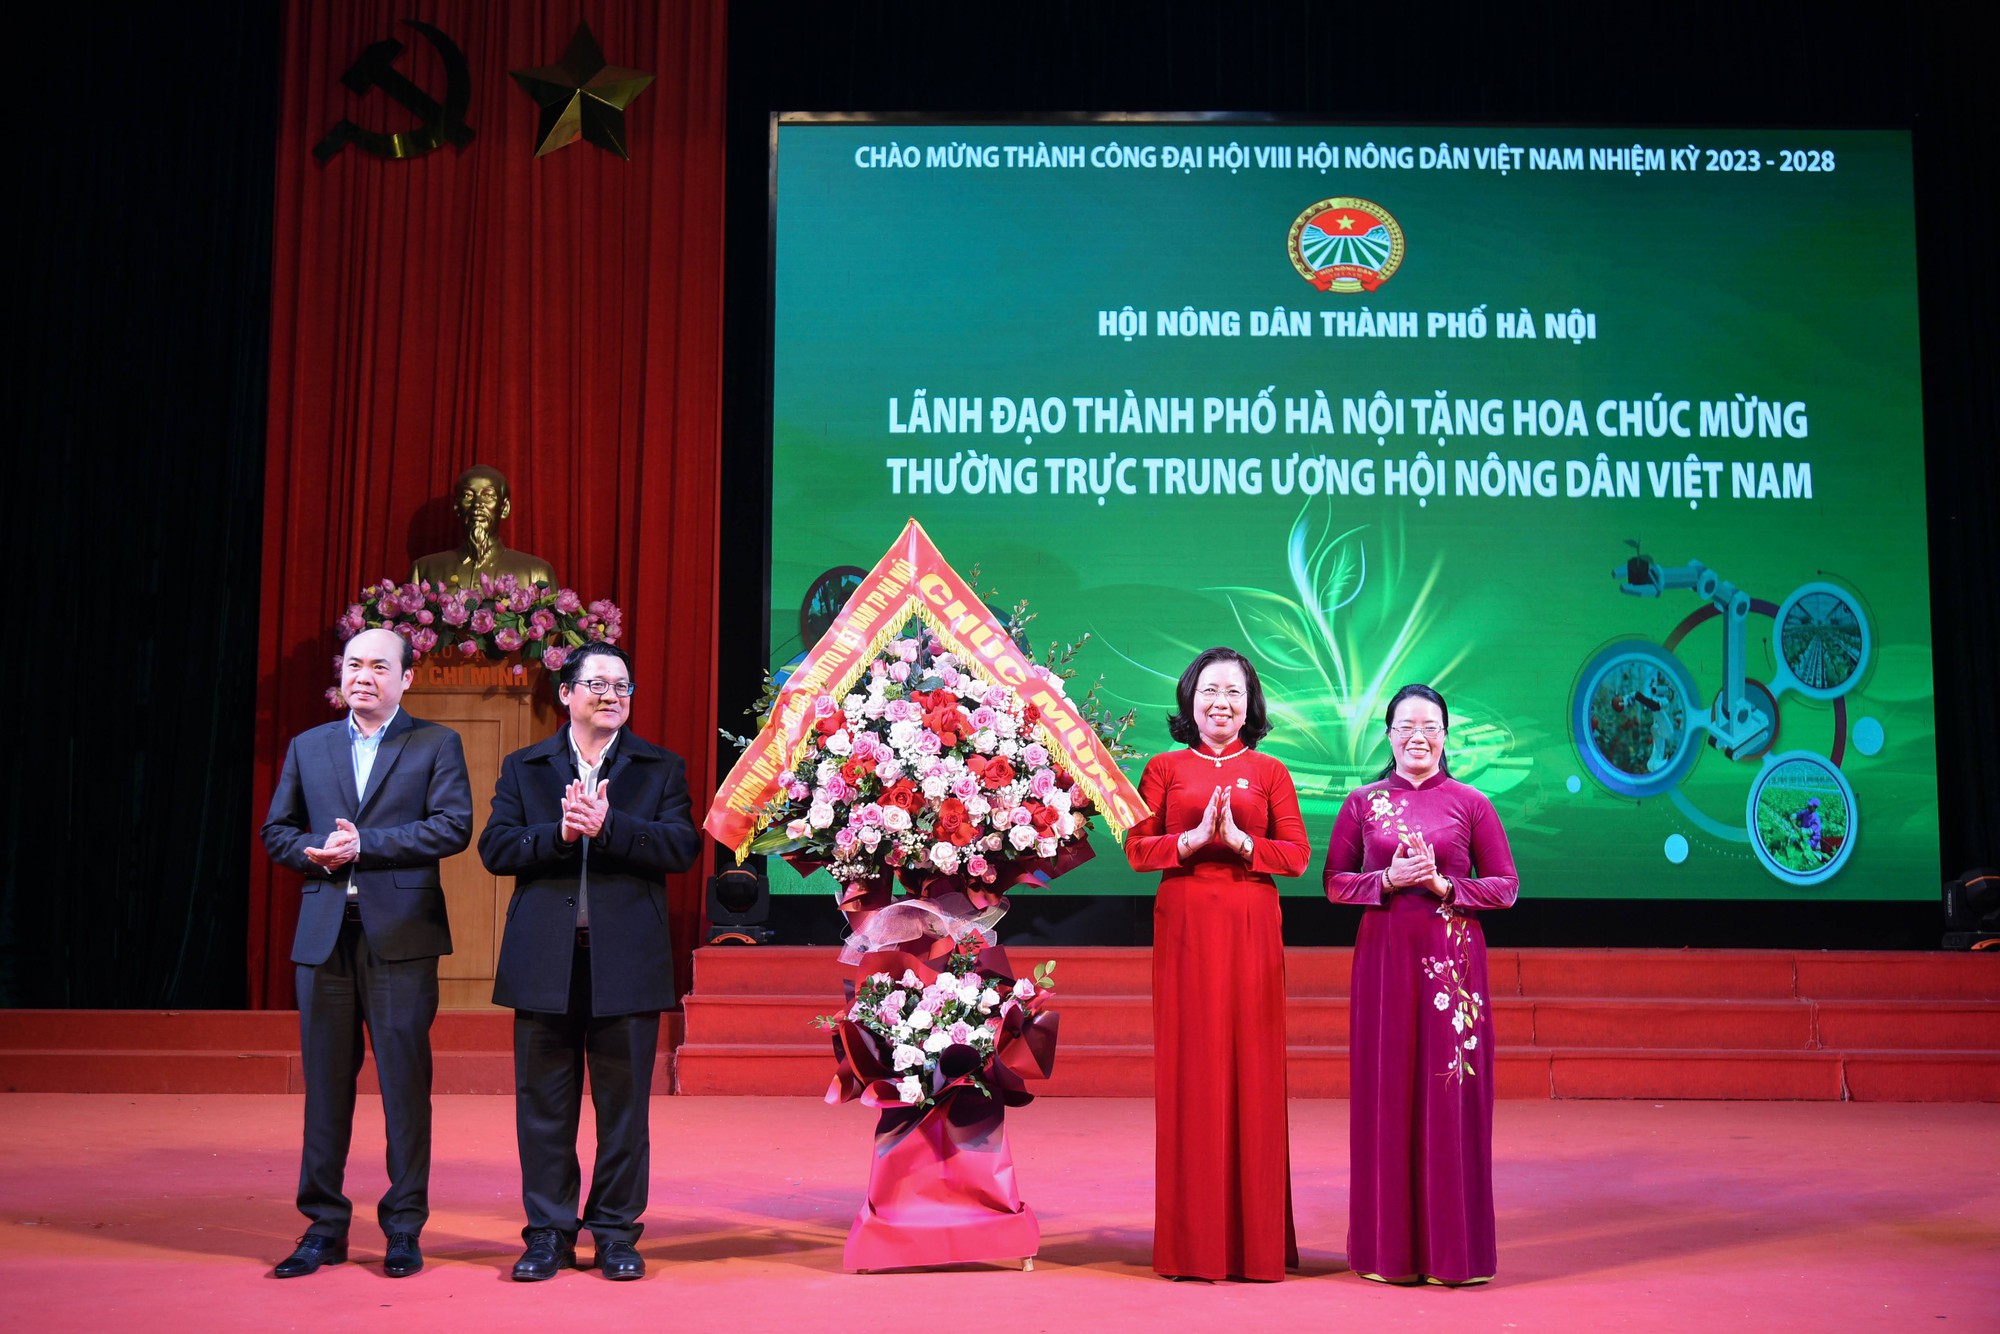 Hội Nông dân Hà Nội tổ chức Lễ mít tinh chào mừng thành công Đại hội đại biểu toàn quốc Hội NDVN lần thứ VIII - Ảnh 6.